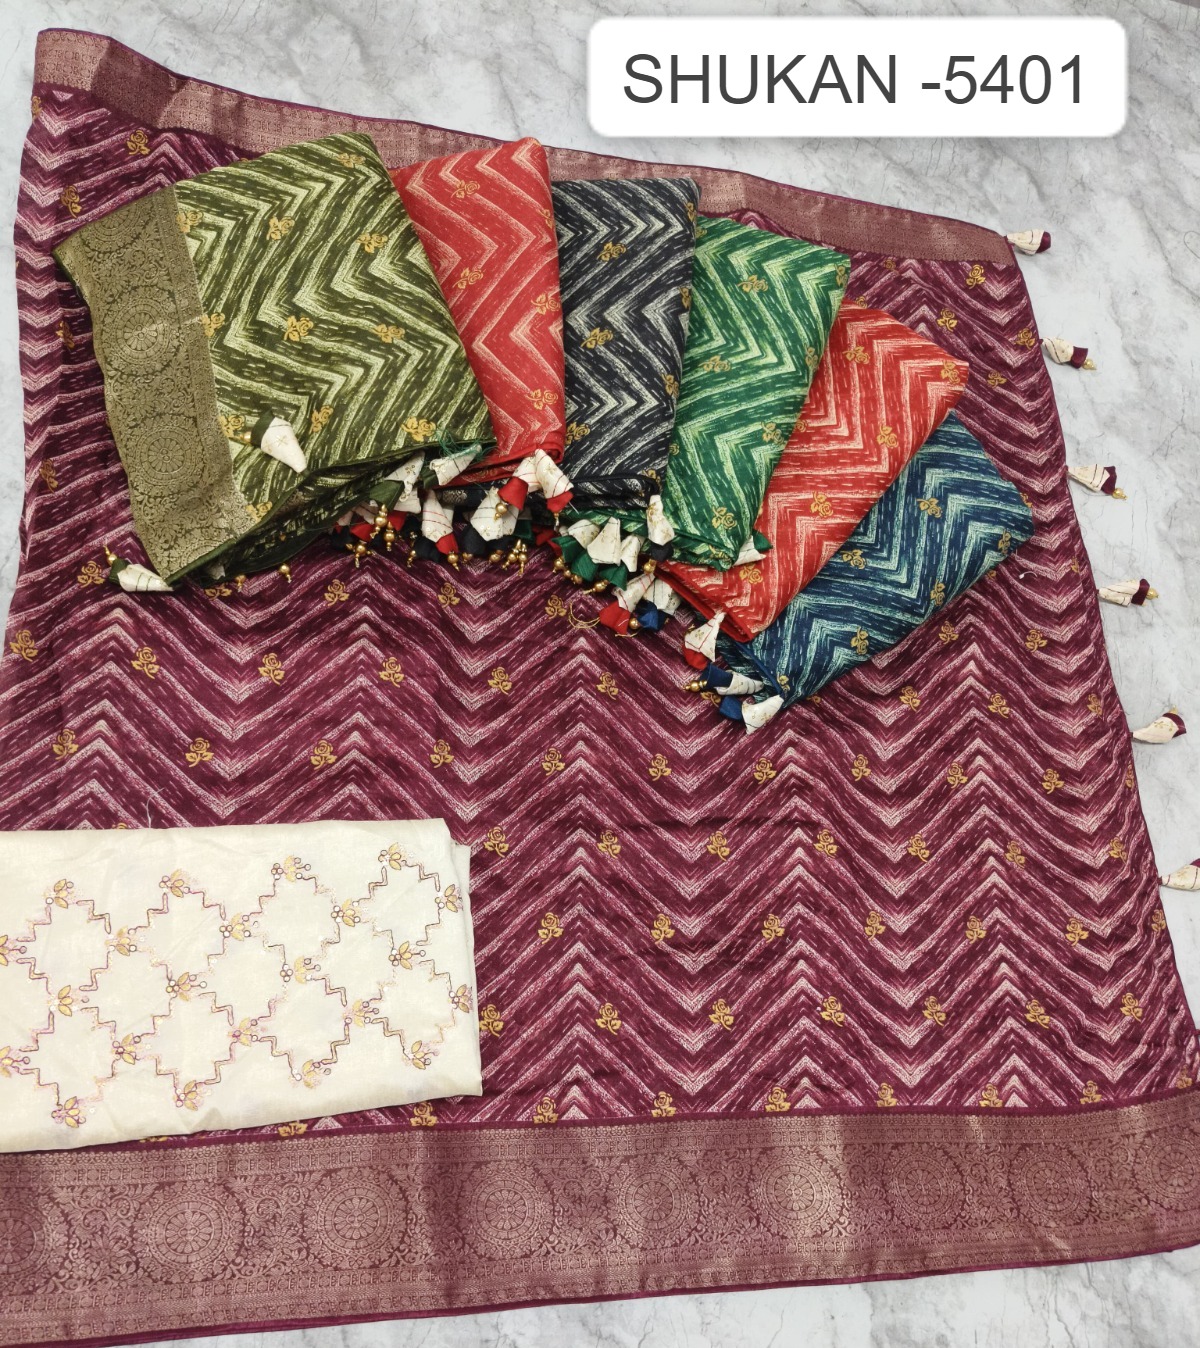 Shukan - 5401 Kalpveli Spun Cotton Sarees